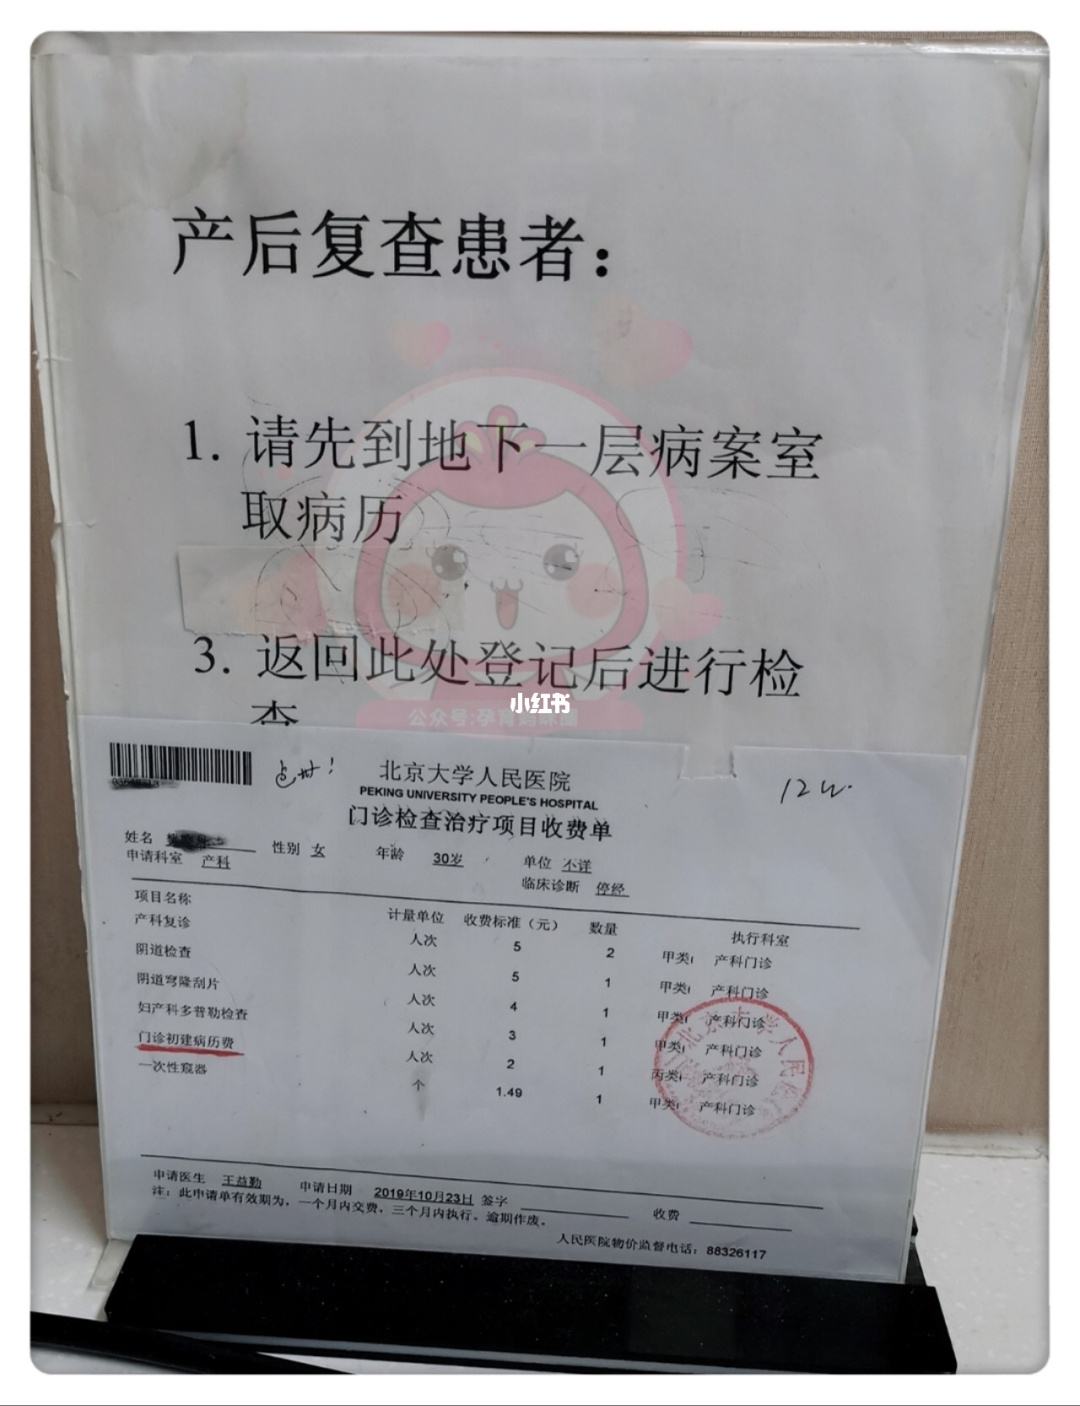 包含北京大学人民医院挂号号贩子联系方式第一时间安排【出号快]的词条